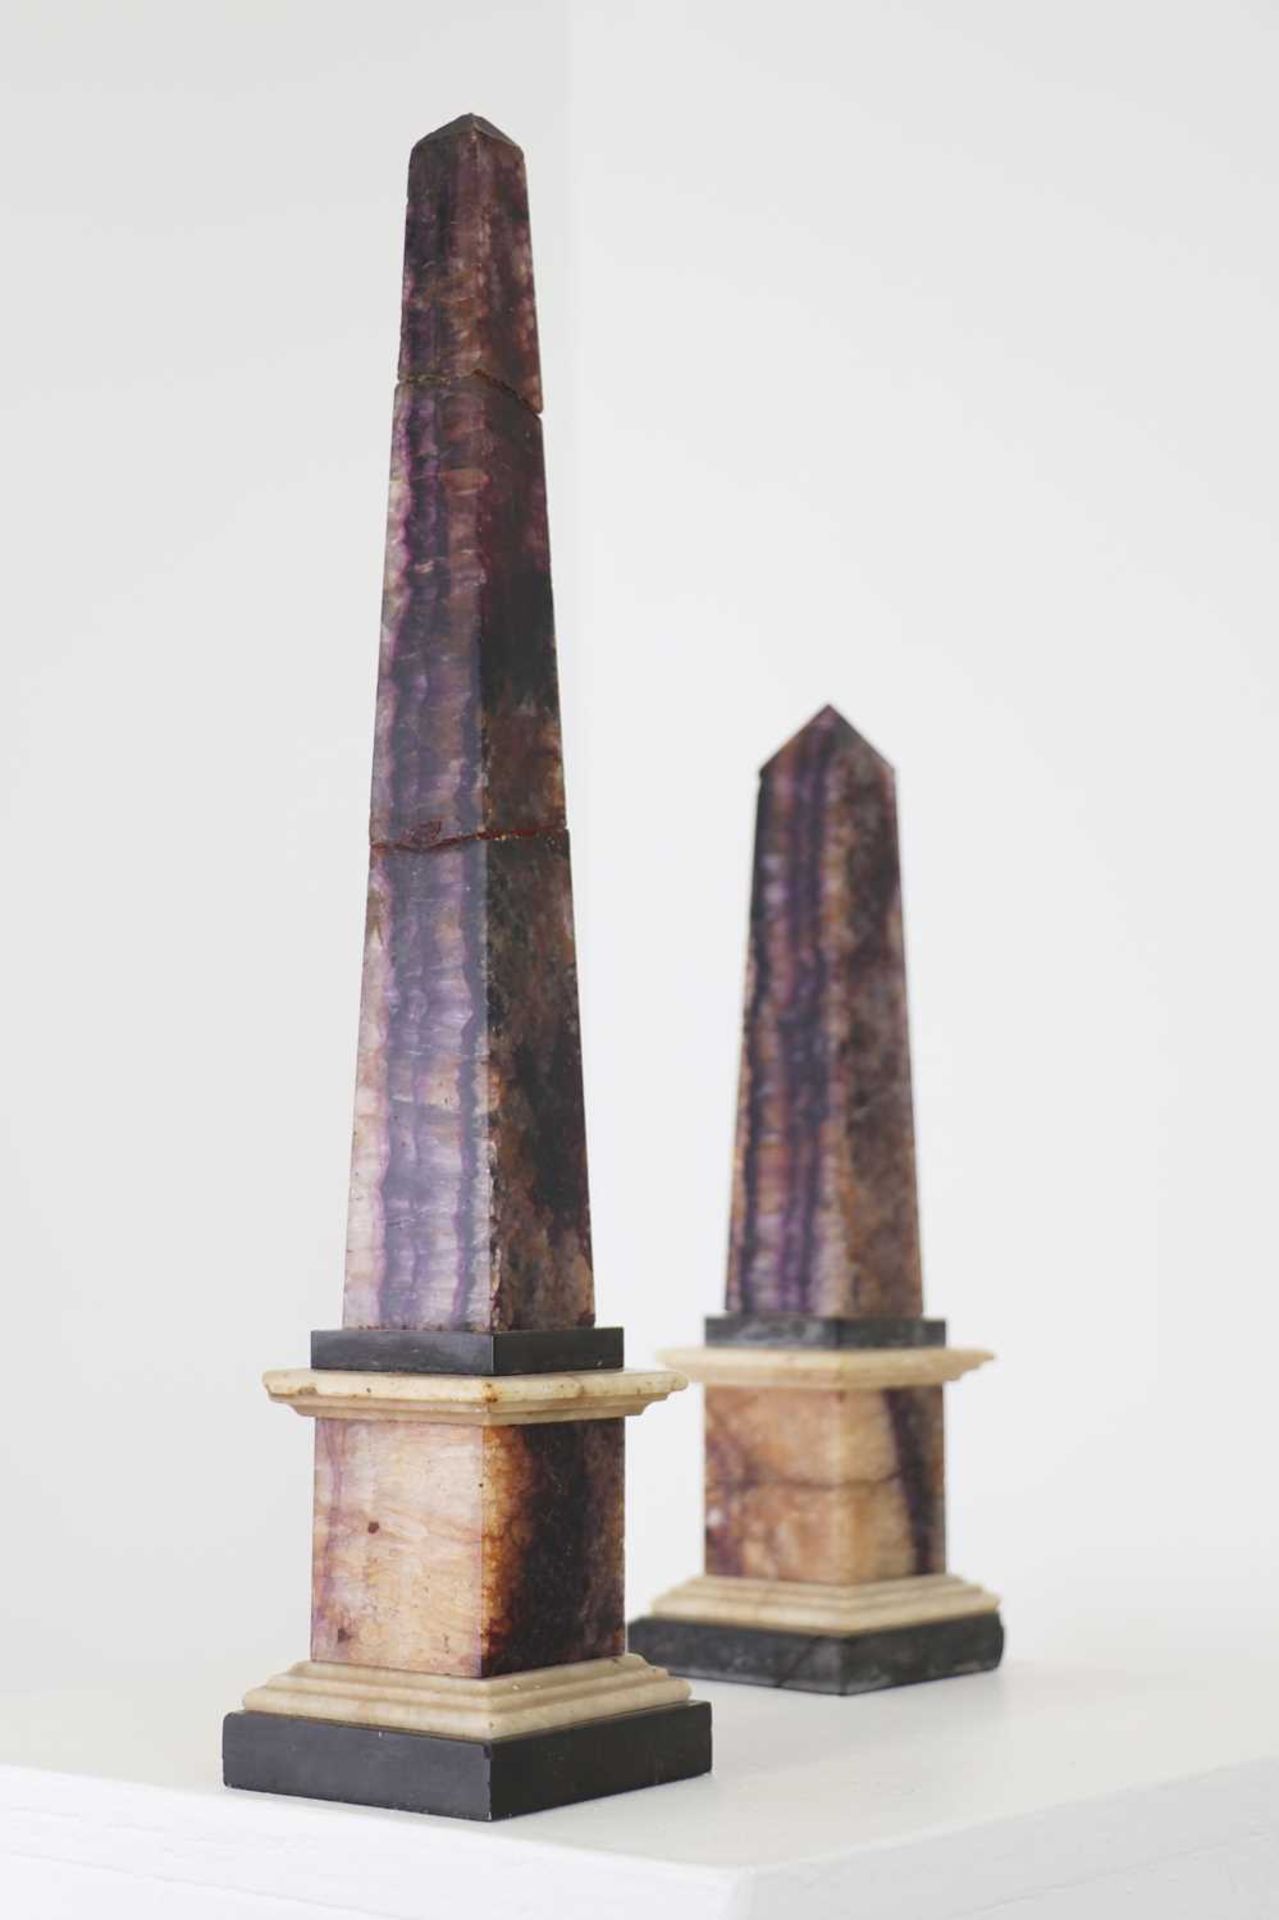 Two Blue John or Derbyshire fluorspar obelisks,